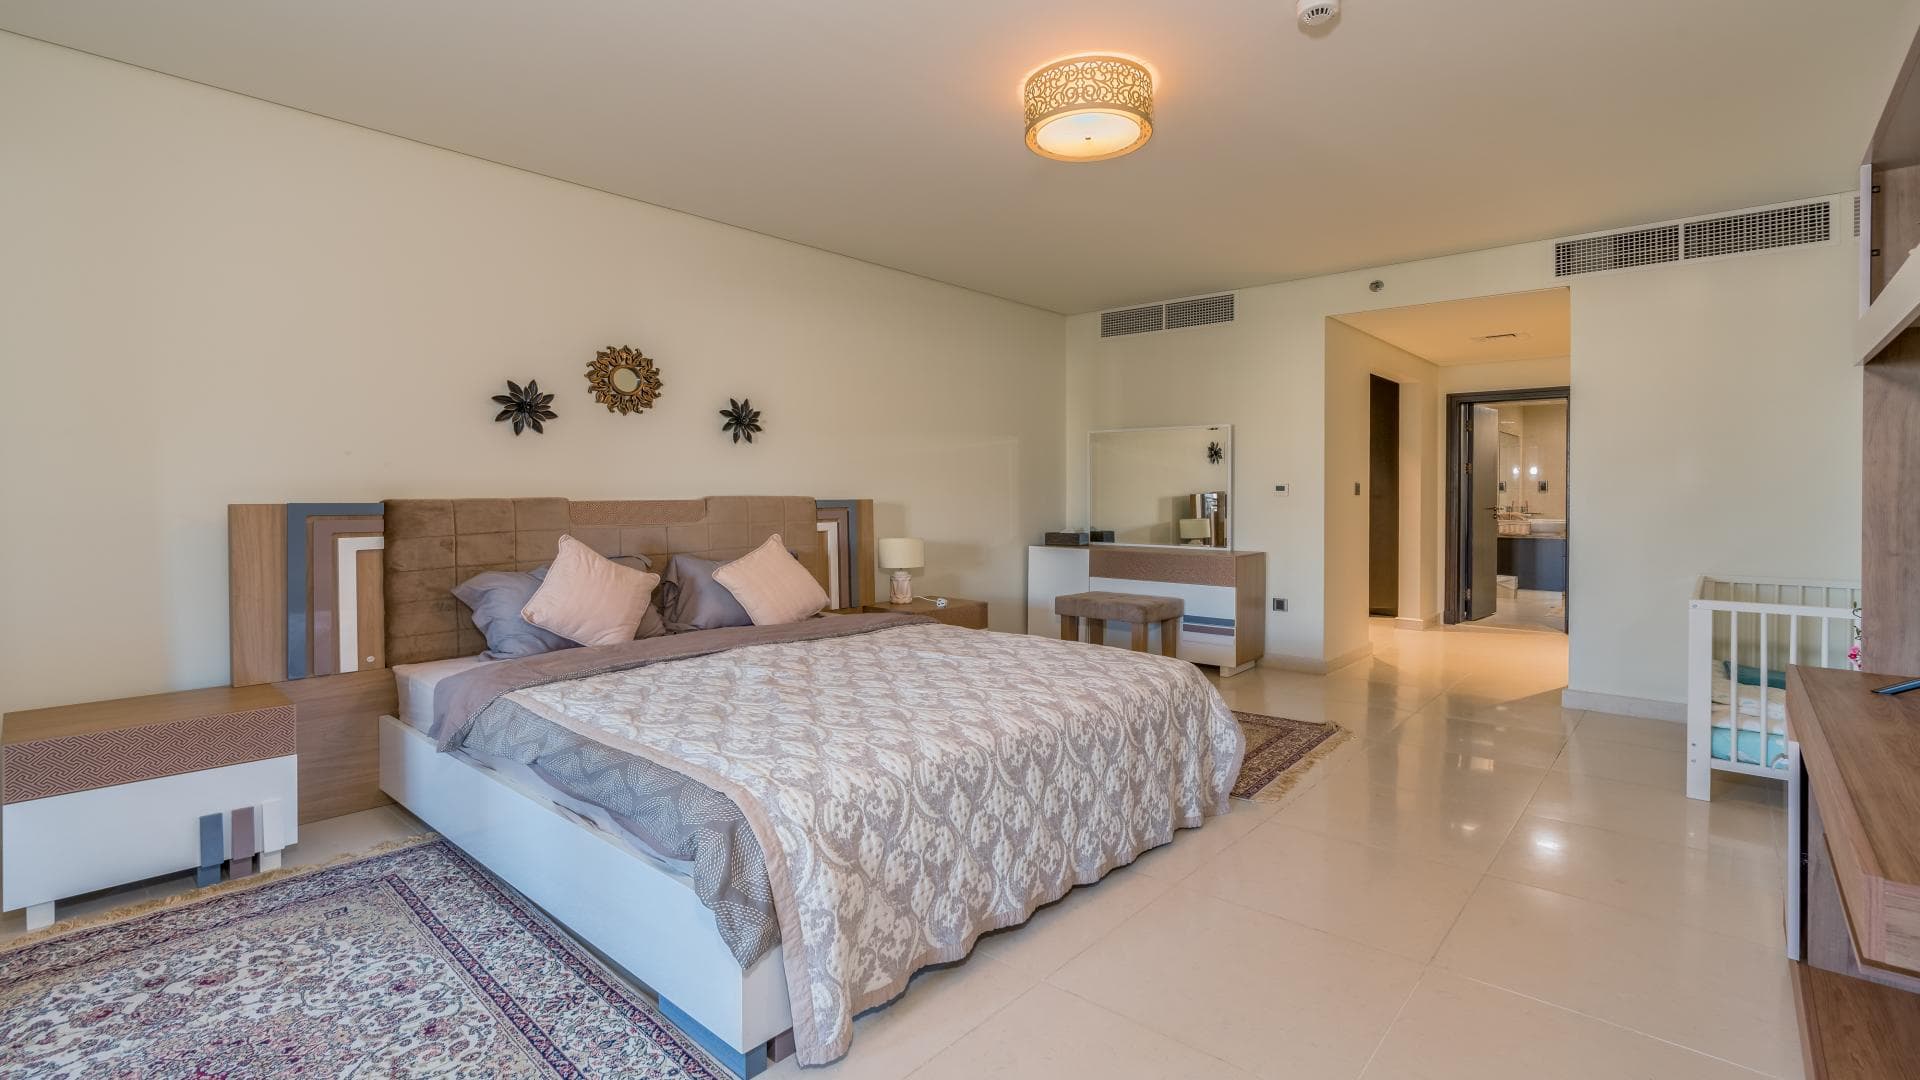 2 Bedroom Apartment For Rent Kingdom Of Sheba Lp19542 12b707a30a5ecf00.jpg